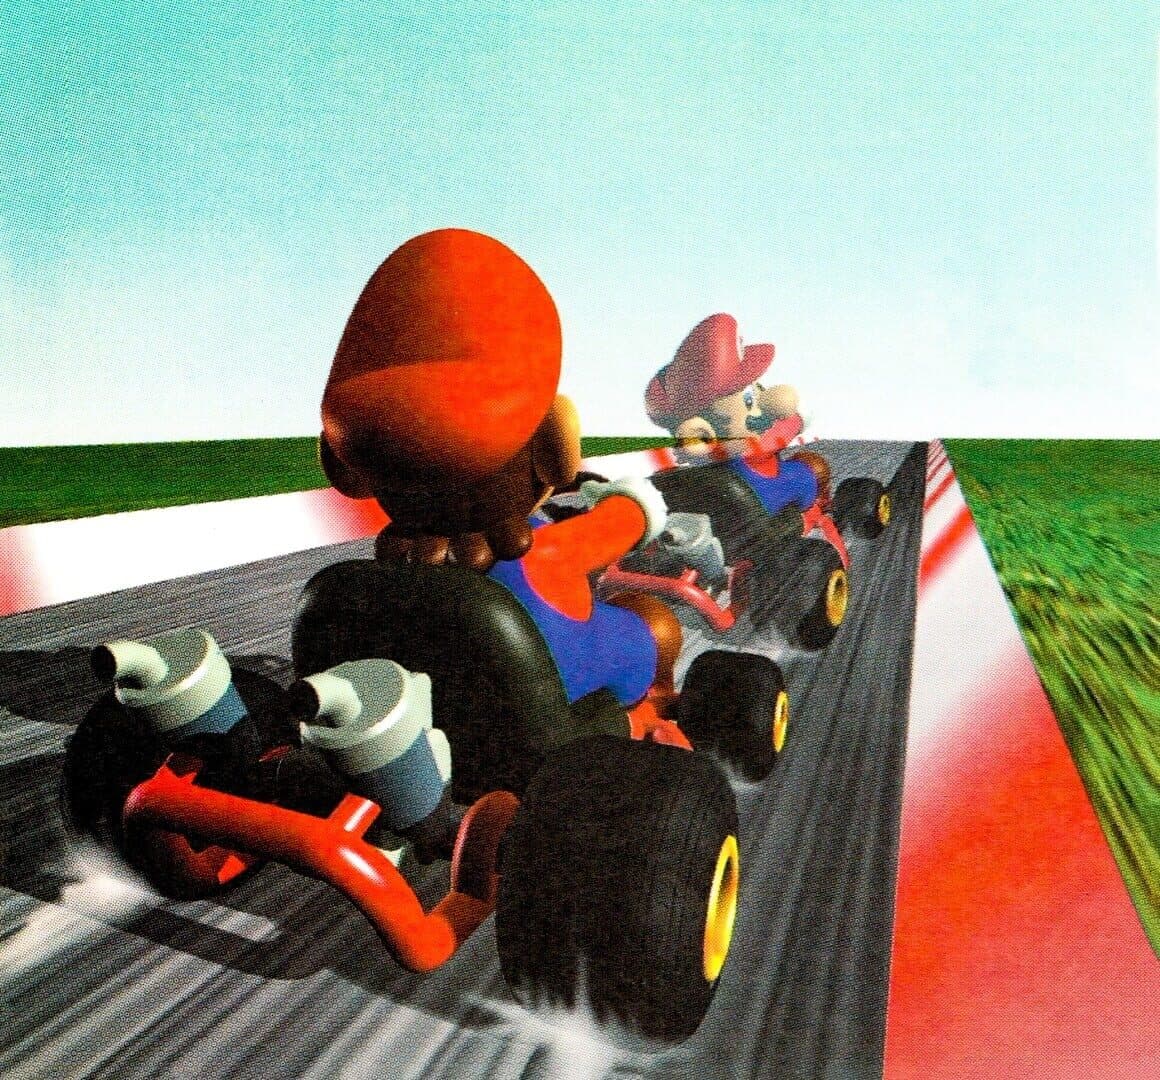 Mario Kart 64 Image